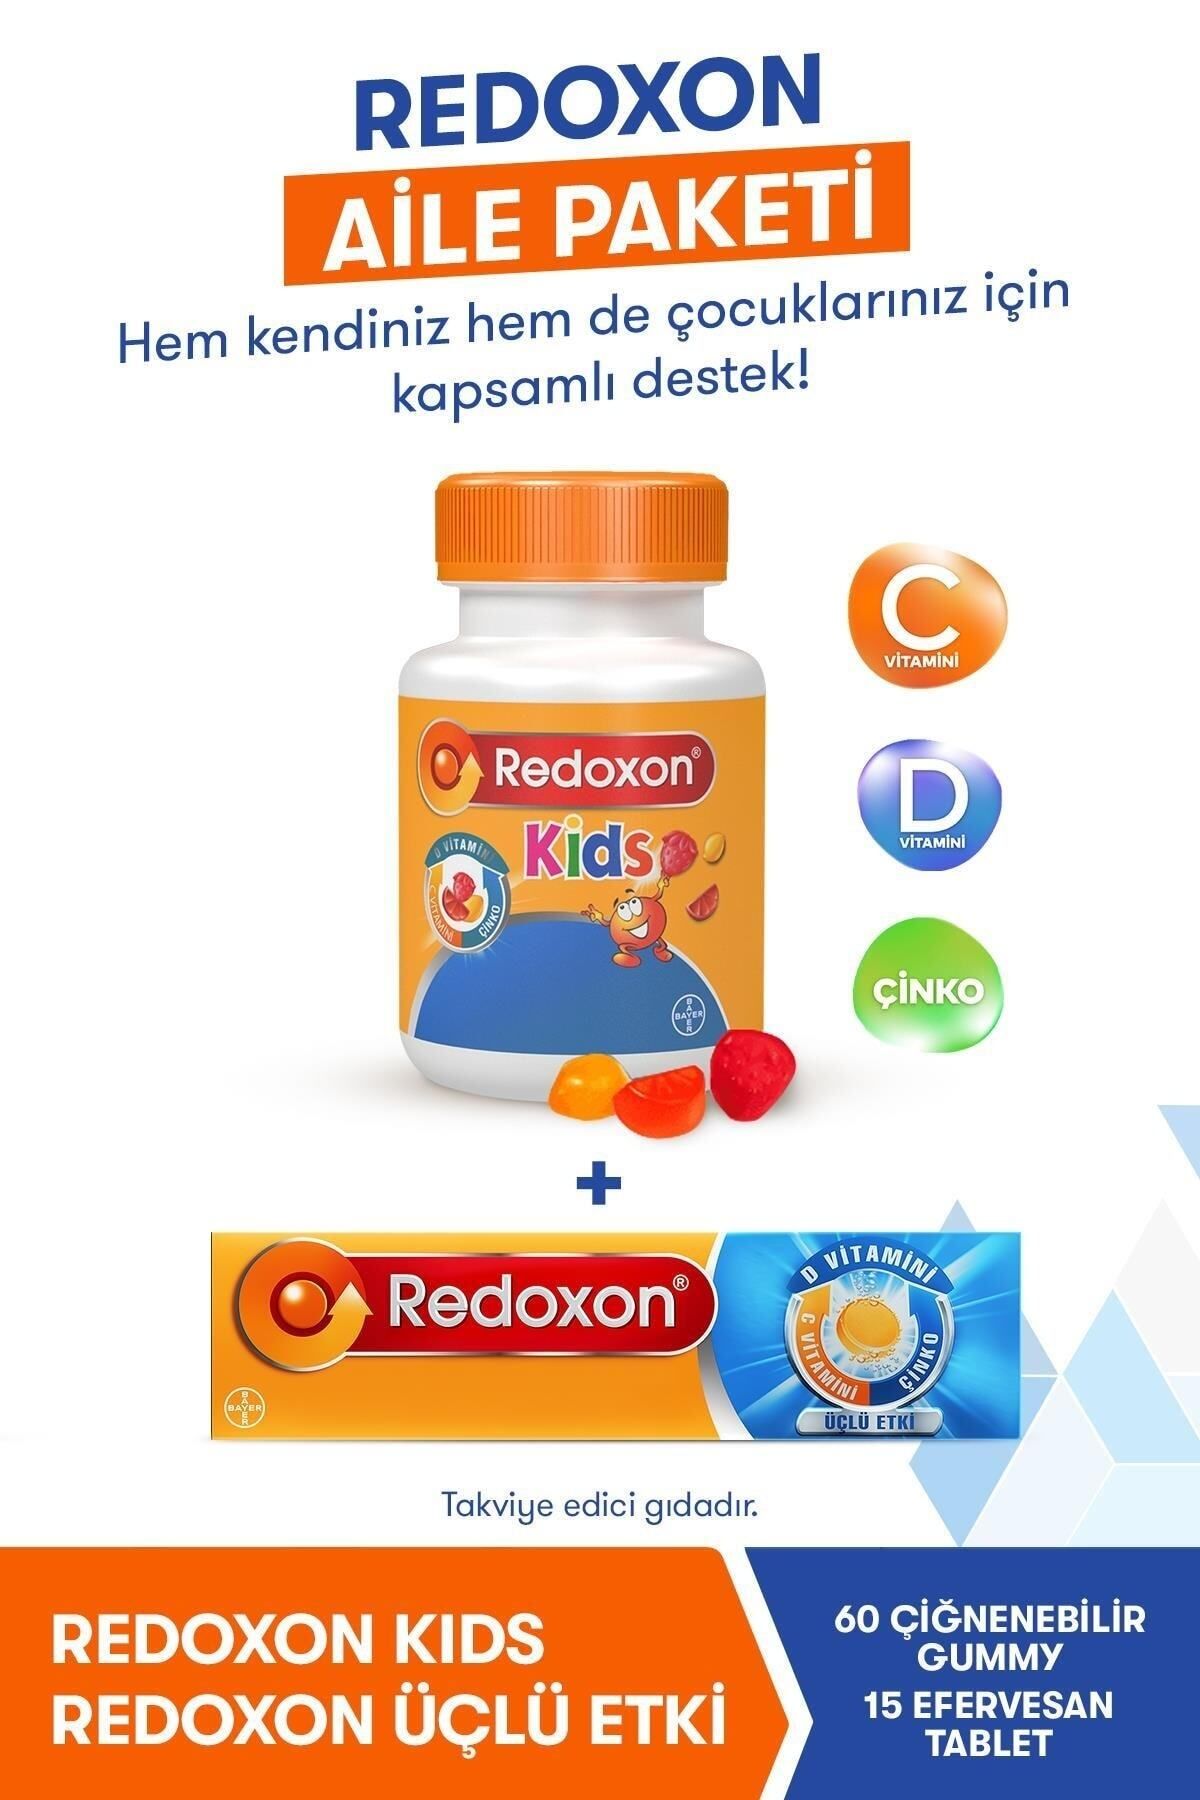 Redoxon Kids+ Üçlü Etki 15 Efervesan Tablet (aile Paketi) I C Vitamini, D Vitamini Ve Çinko